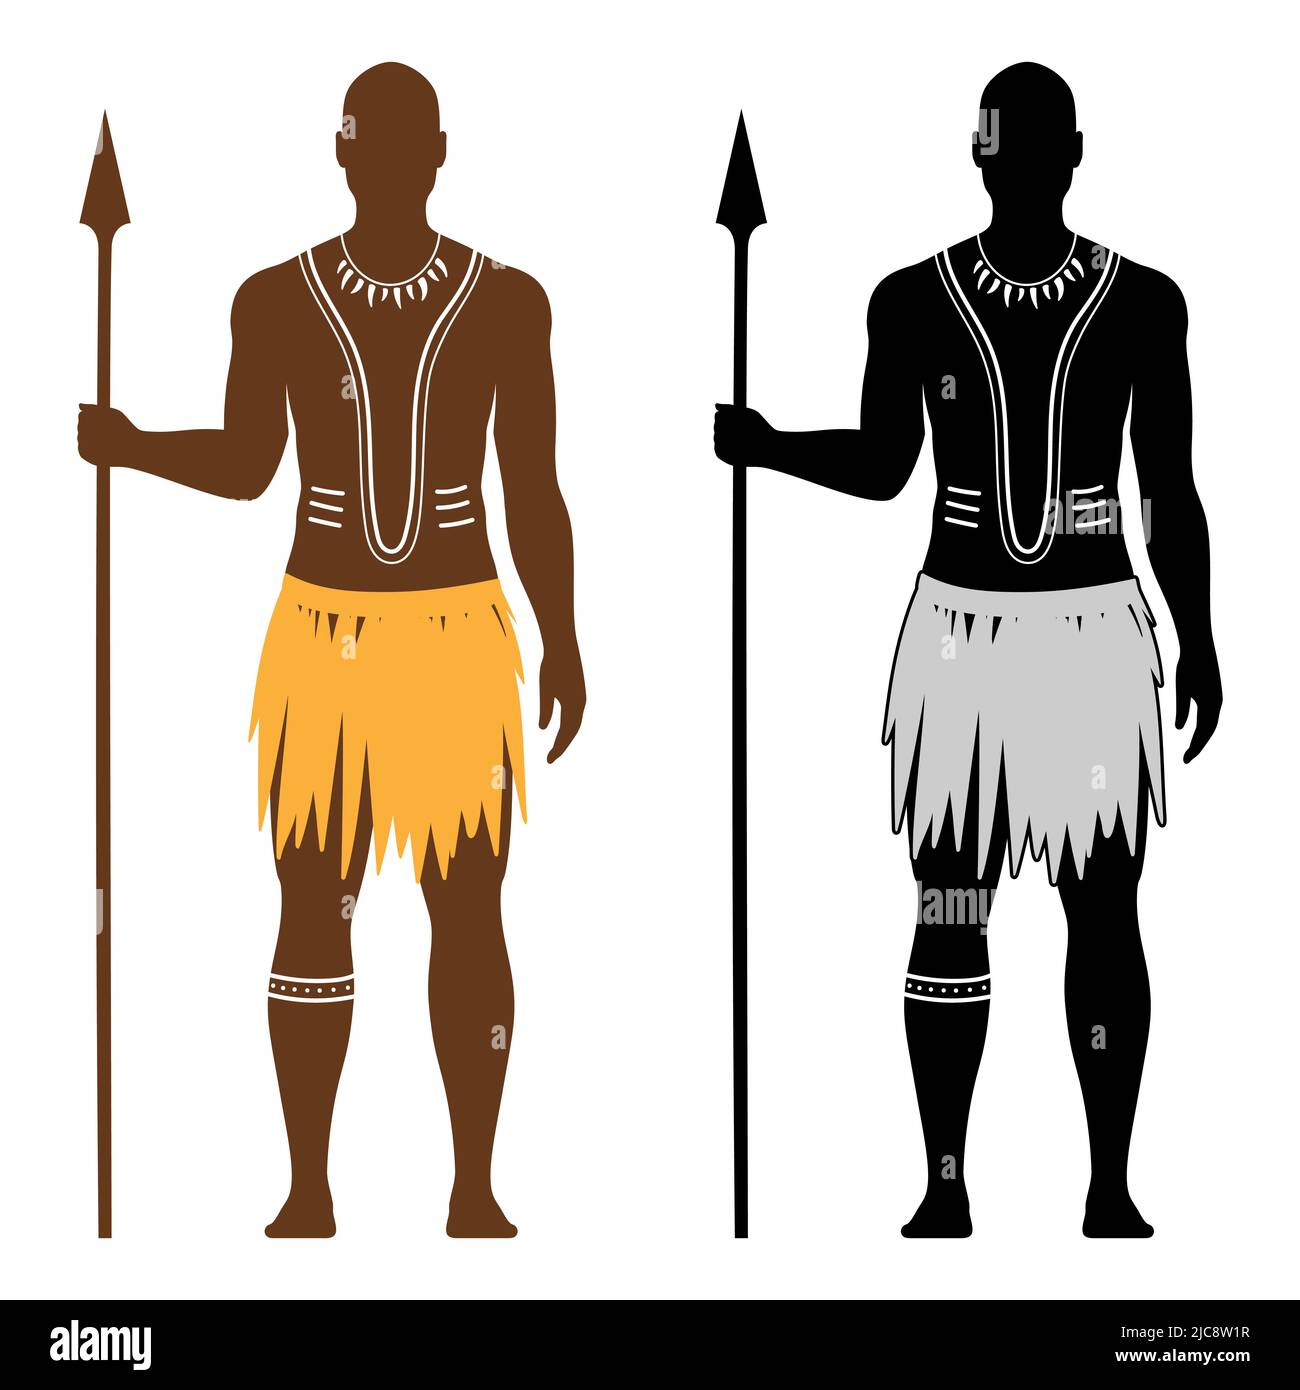 Vektor-Set von afrikanischen schwarzen Aborigine Krieger Mann mit traditionellen Körperkunst, hält einen Speer, und in einem ethnischen Kleid, isoliert auf weißem Hintergrund gekleidet. Stock Vektor